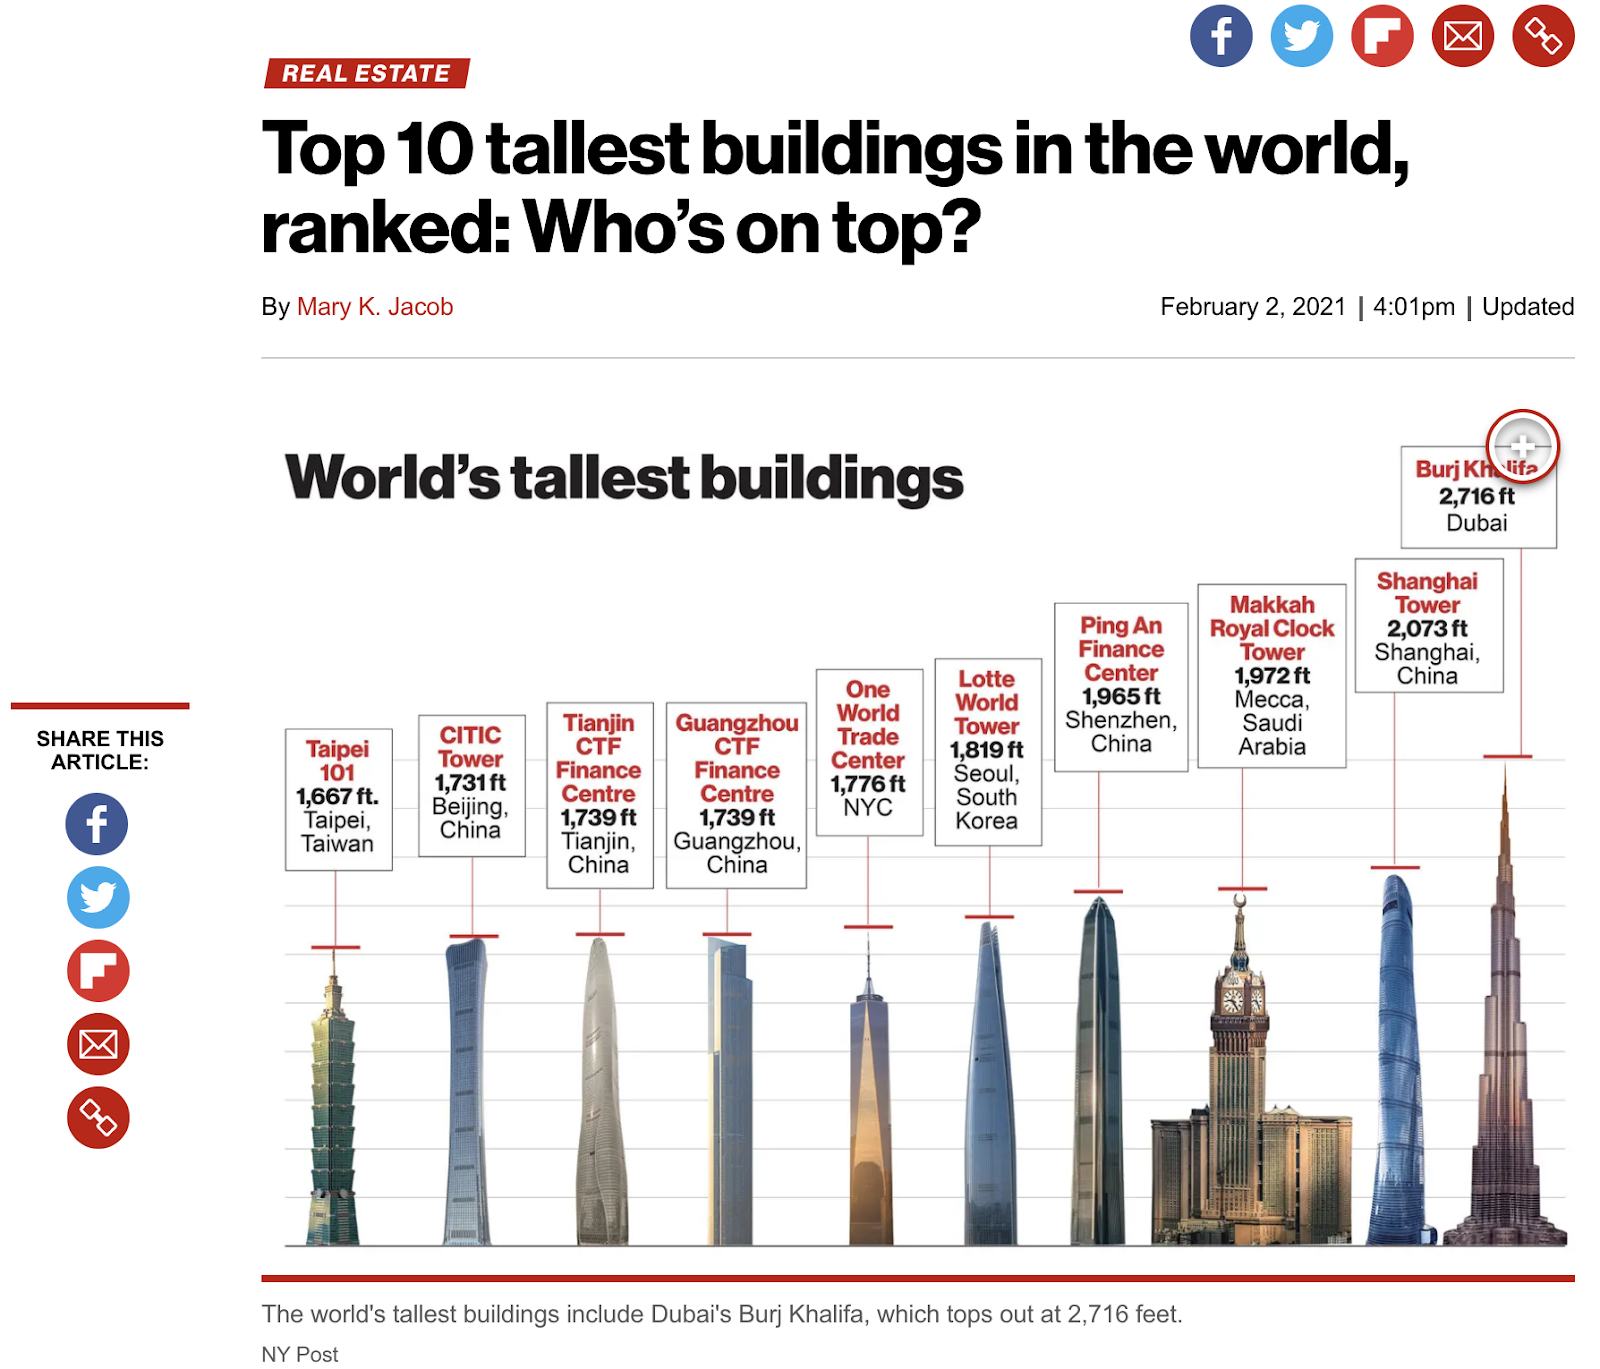 نحوه استفاده از داده ها در تولید محتوا: پست نیویورک که مقیاس بلندترین ساختمان های جهان را نشان می دهد